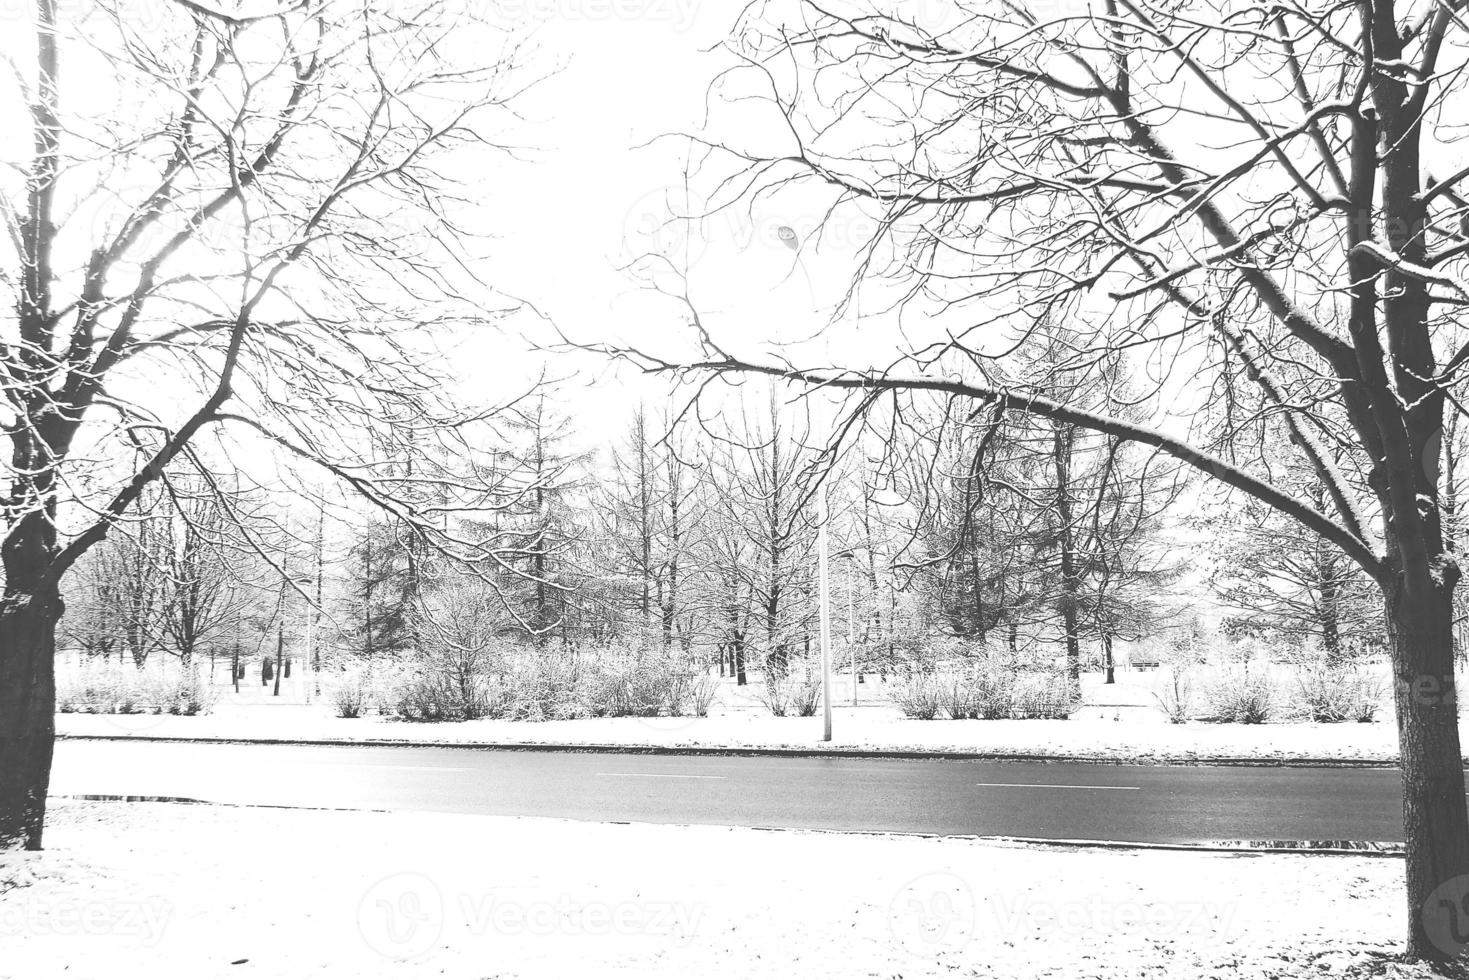 vinter- landskap med färsk snö och träd foto